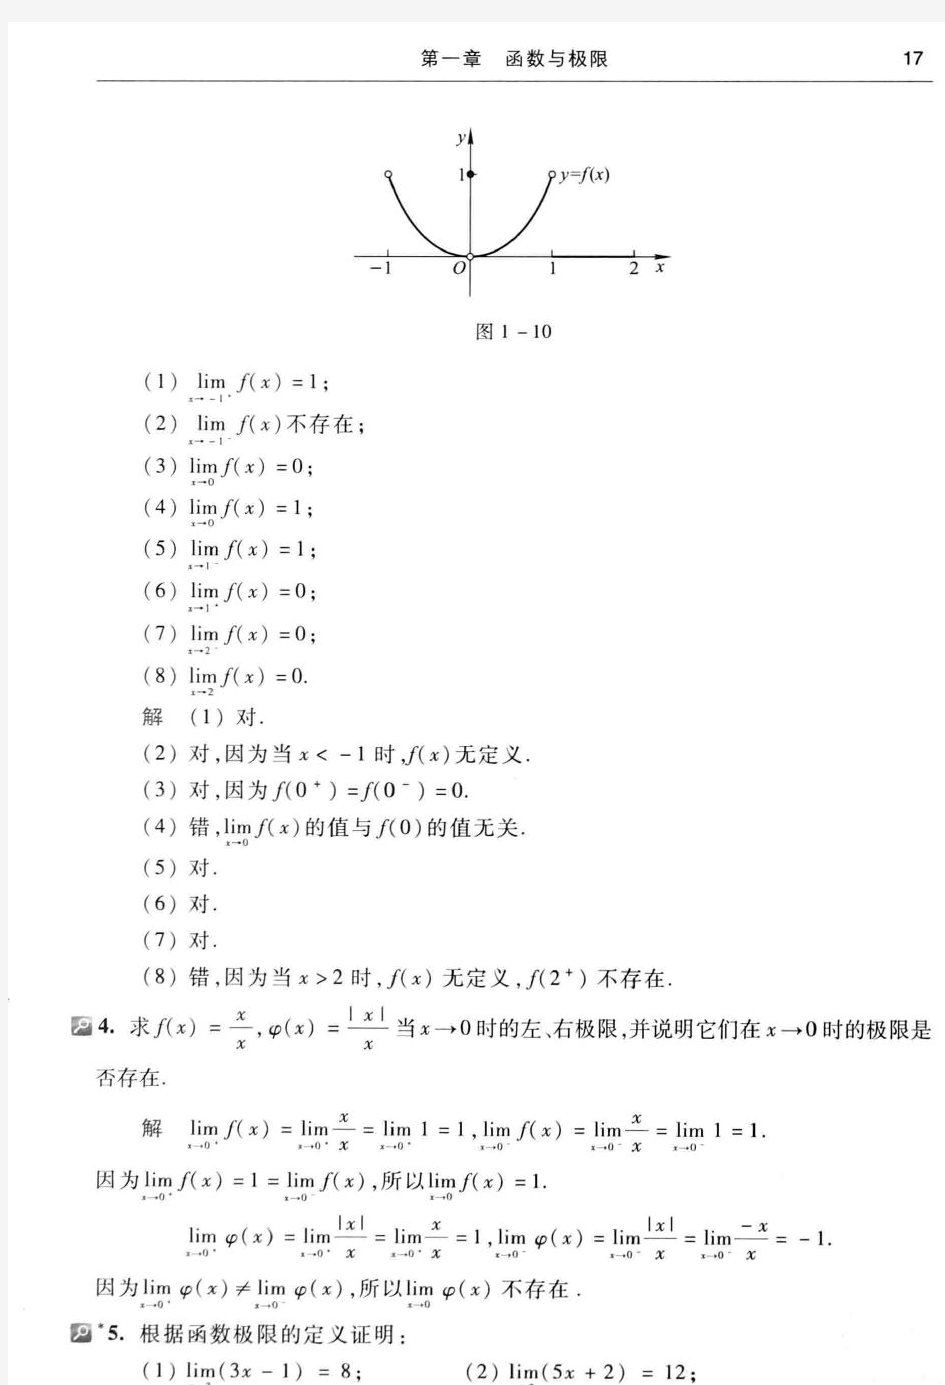 高等数学(第七版上册)同济大学 习题1.3答案(函数的极限)